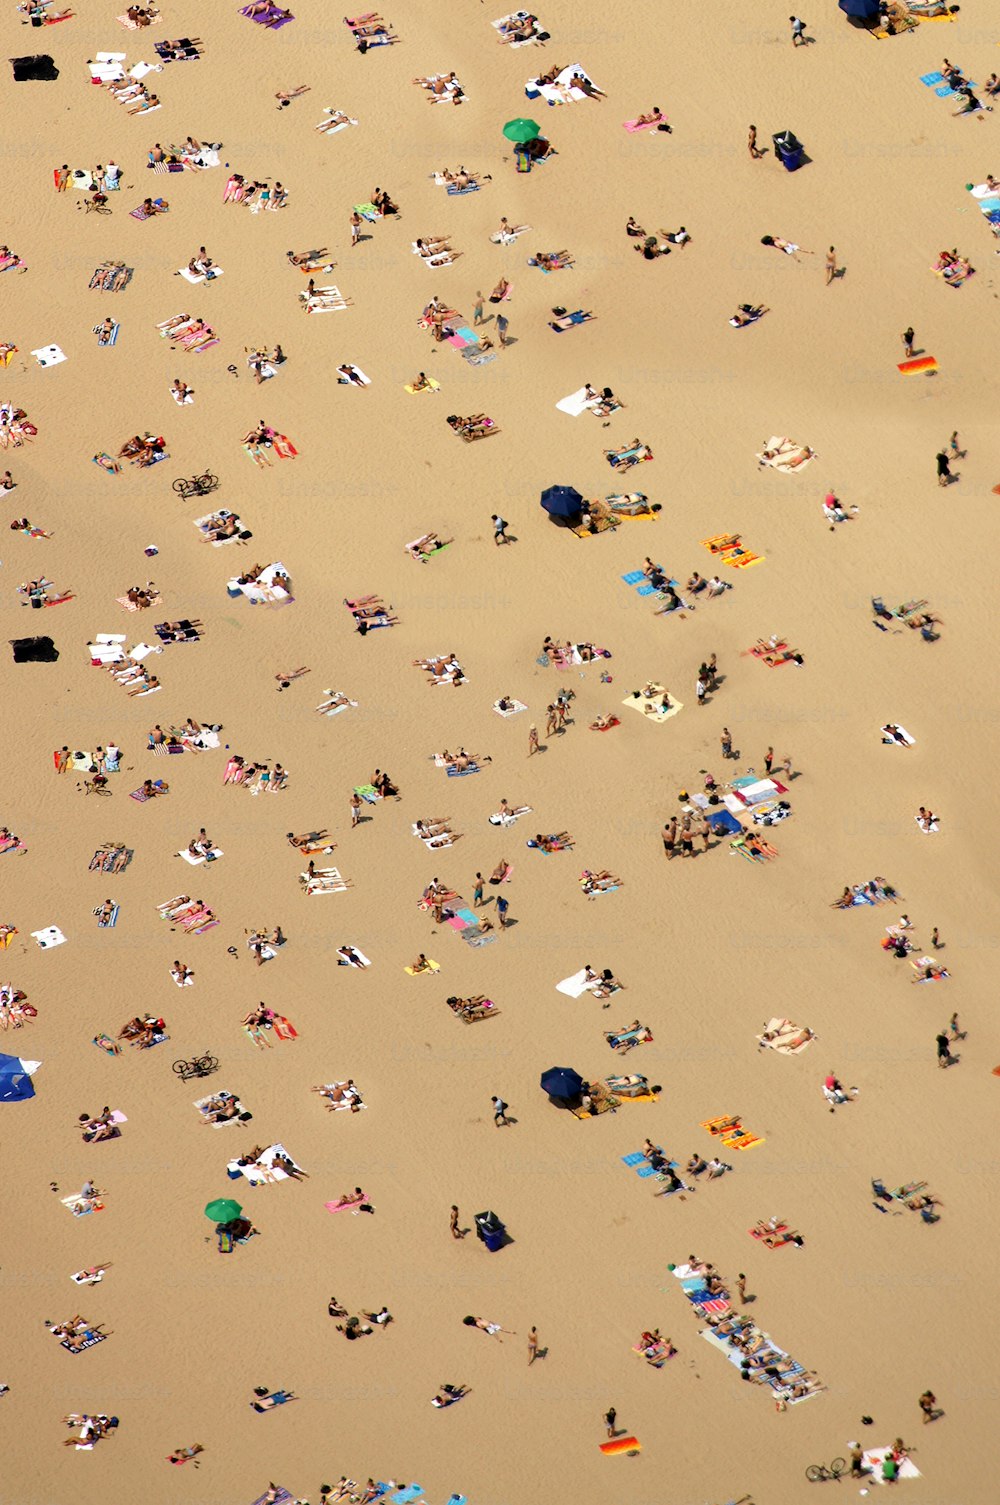 모래 사장 위에 누워있는 많은 사람들